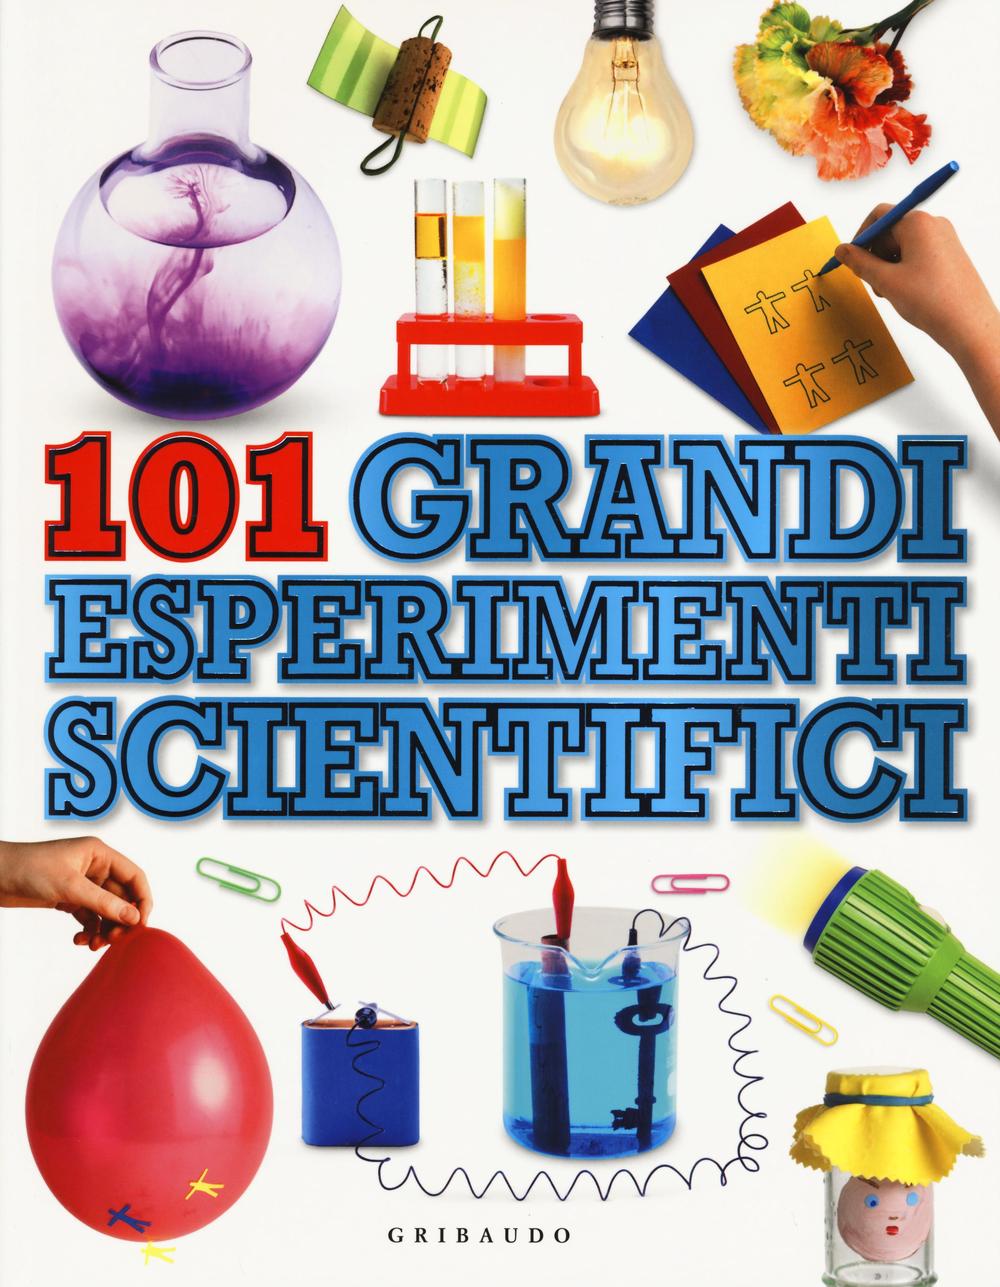 101 grandi esperimenti scientifici